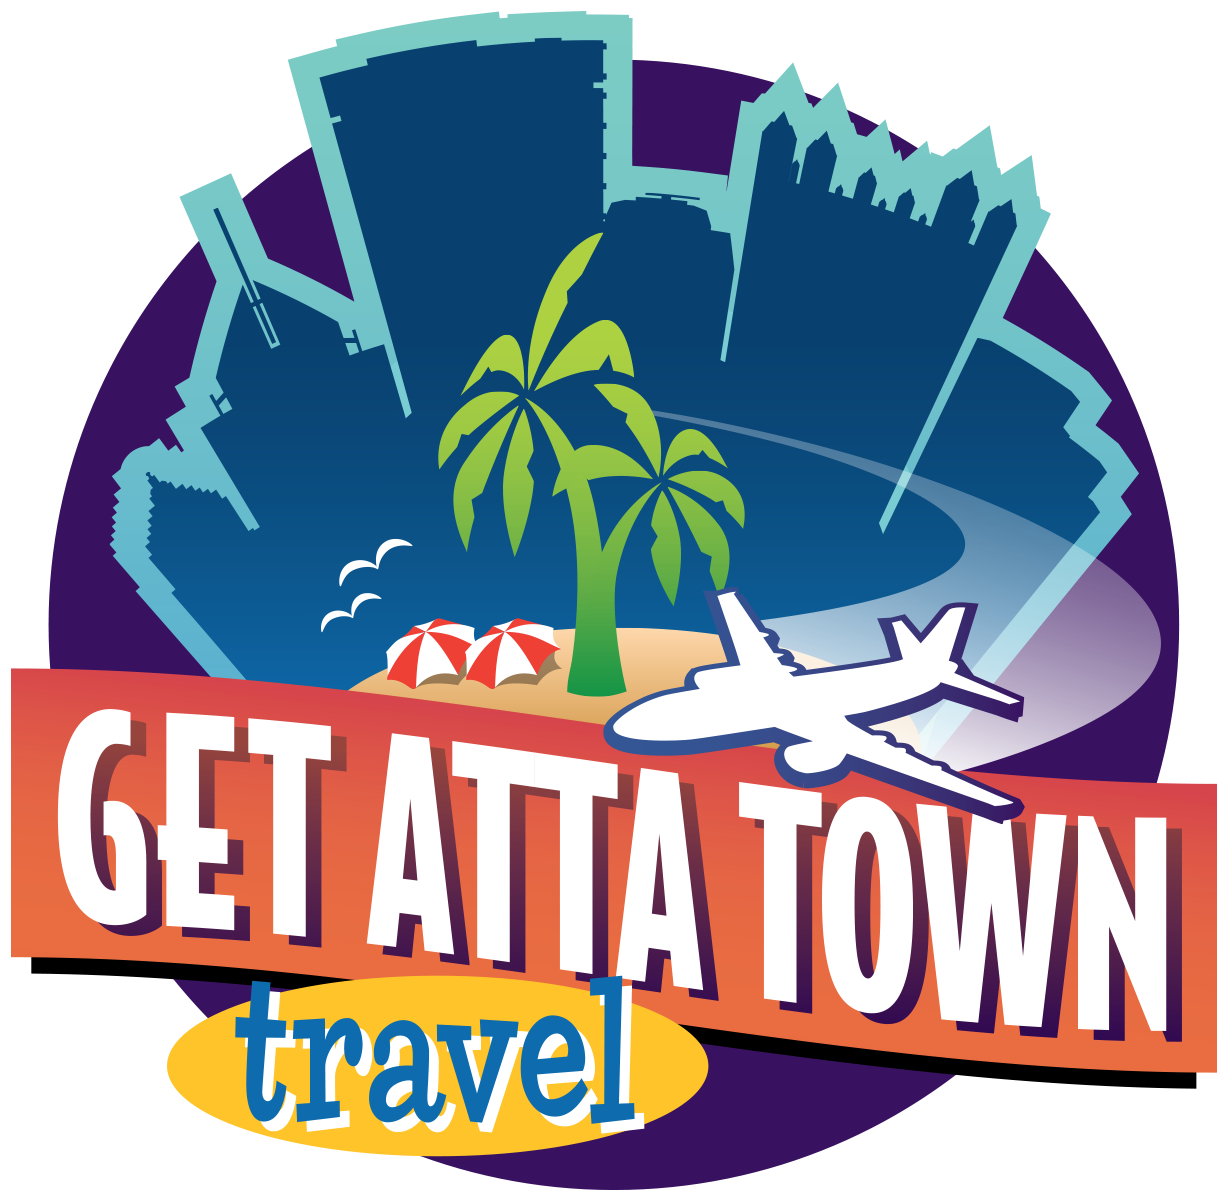 Get Atta Town Travel